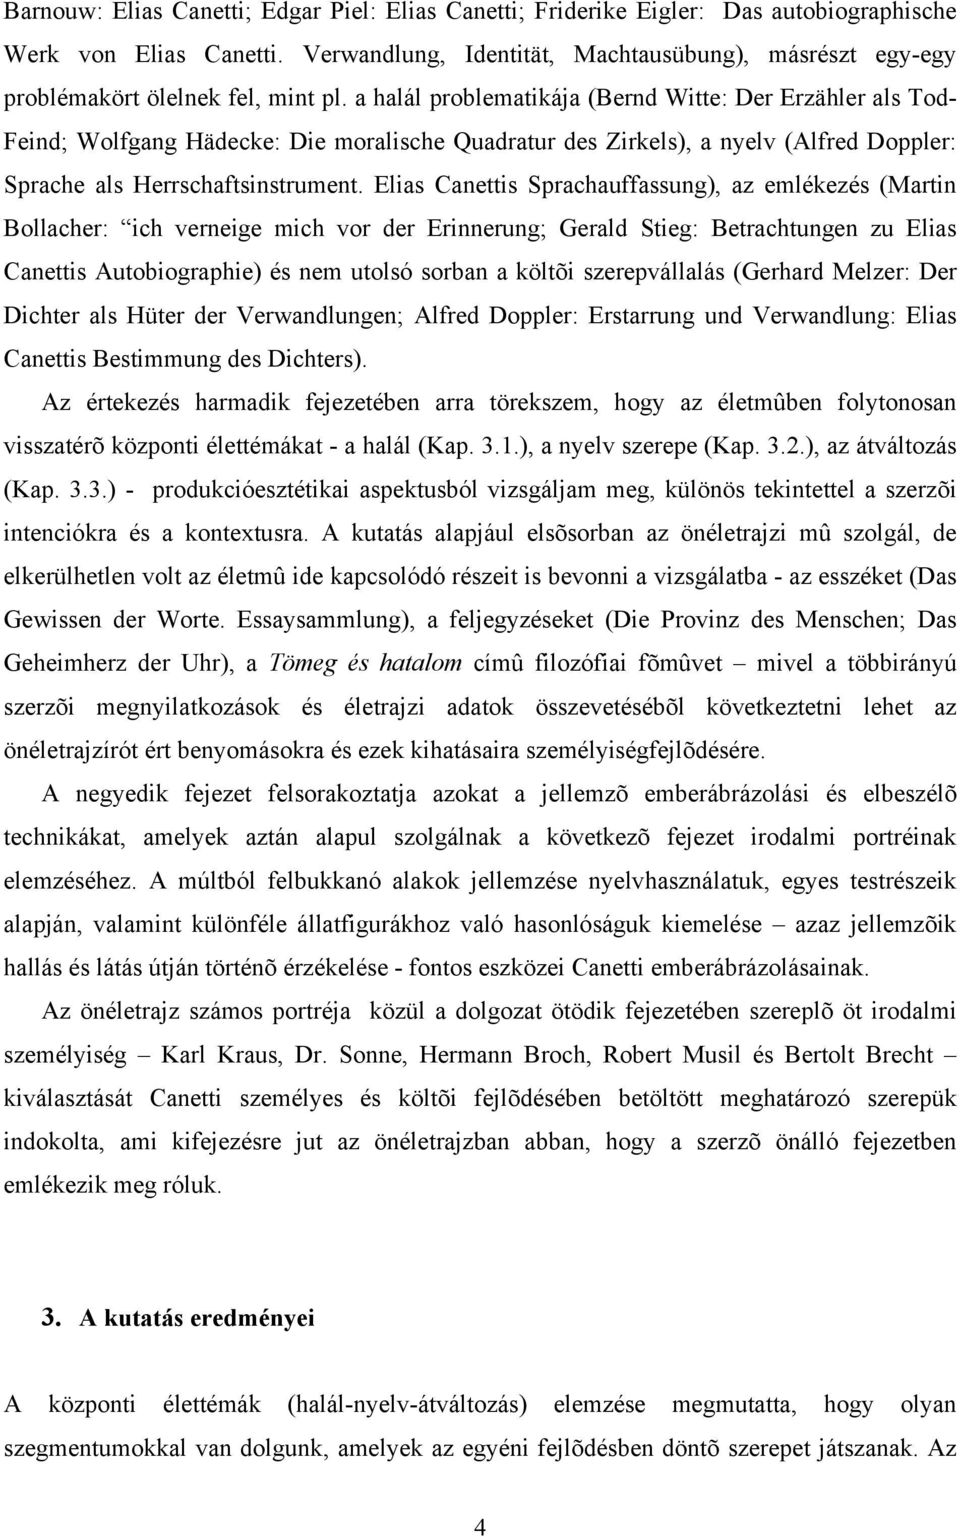 a halál problematikája (Bernd Witte: Der Erzähler als Tod- Feind; Wolfgang Hädecke: Die moralische Quadratur des Zirkels), a nyelv (Alfred Doppler: Sprache als Herrschaftsinstrument.